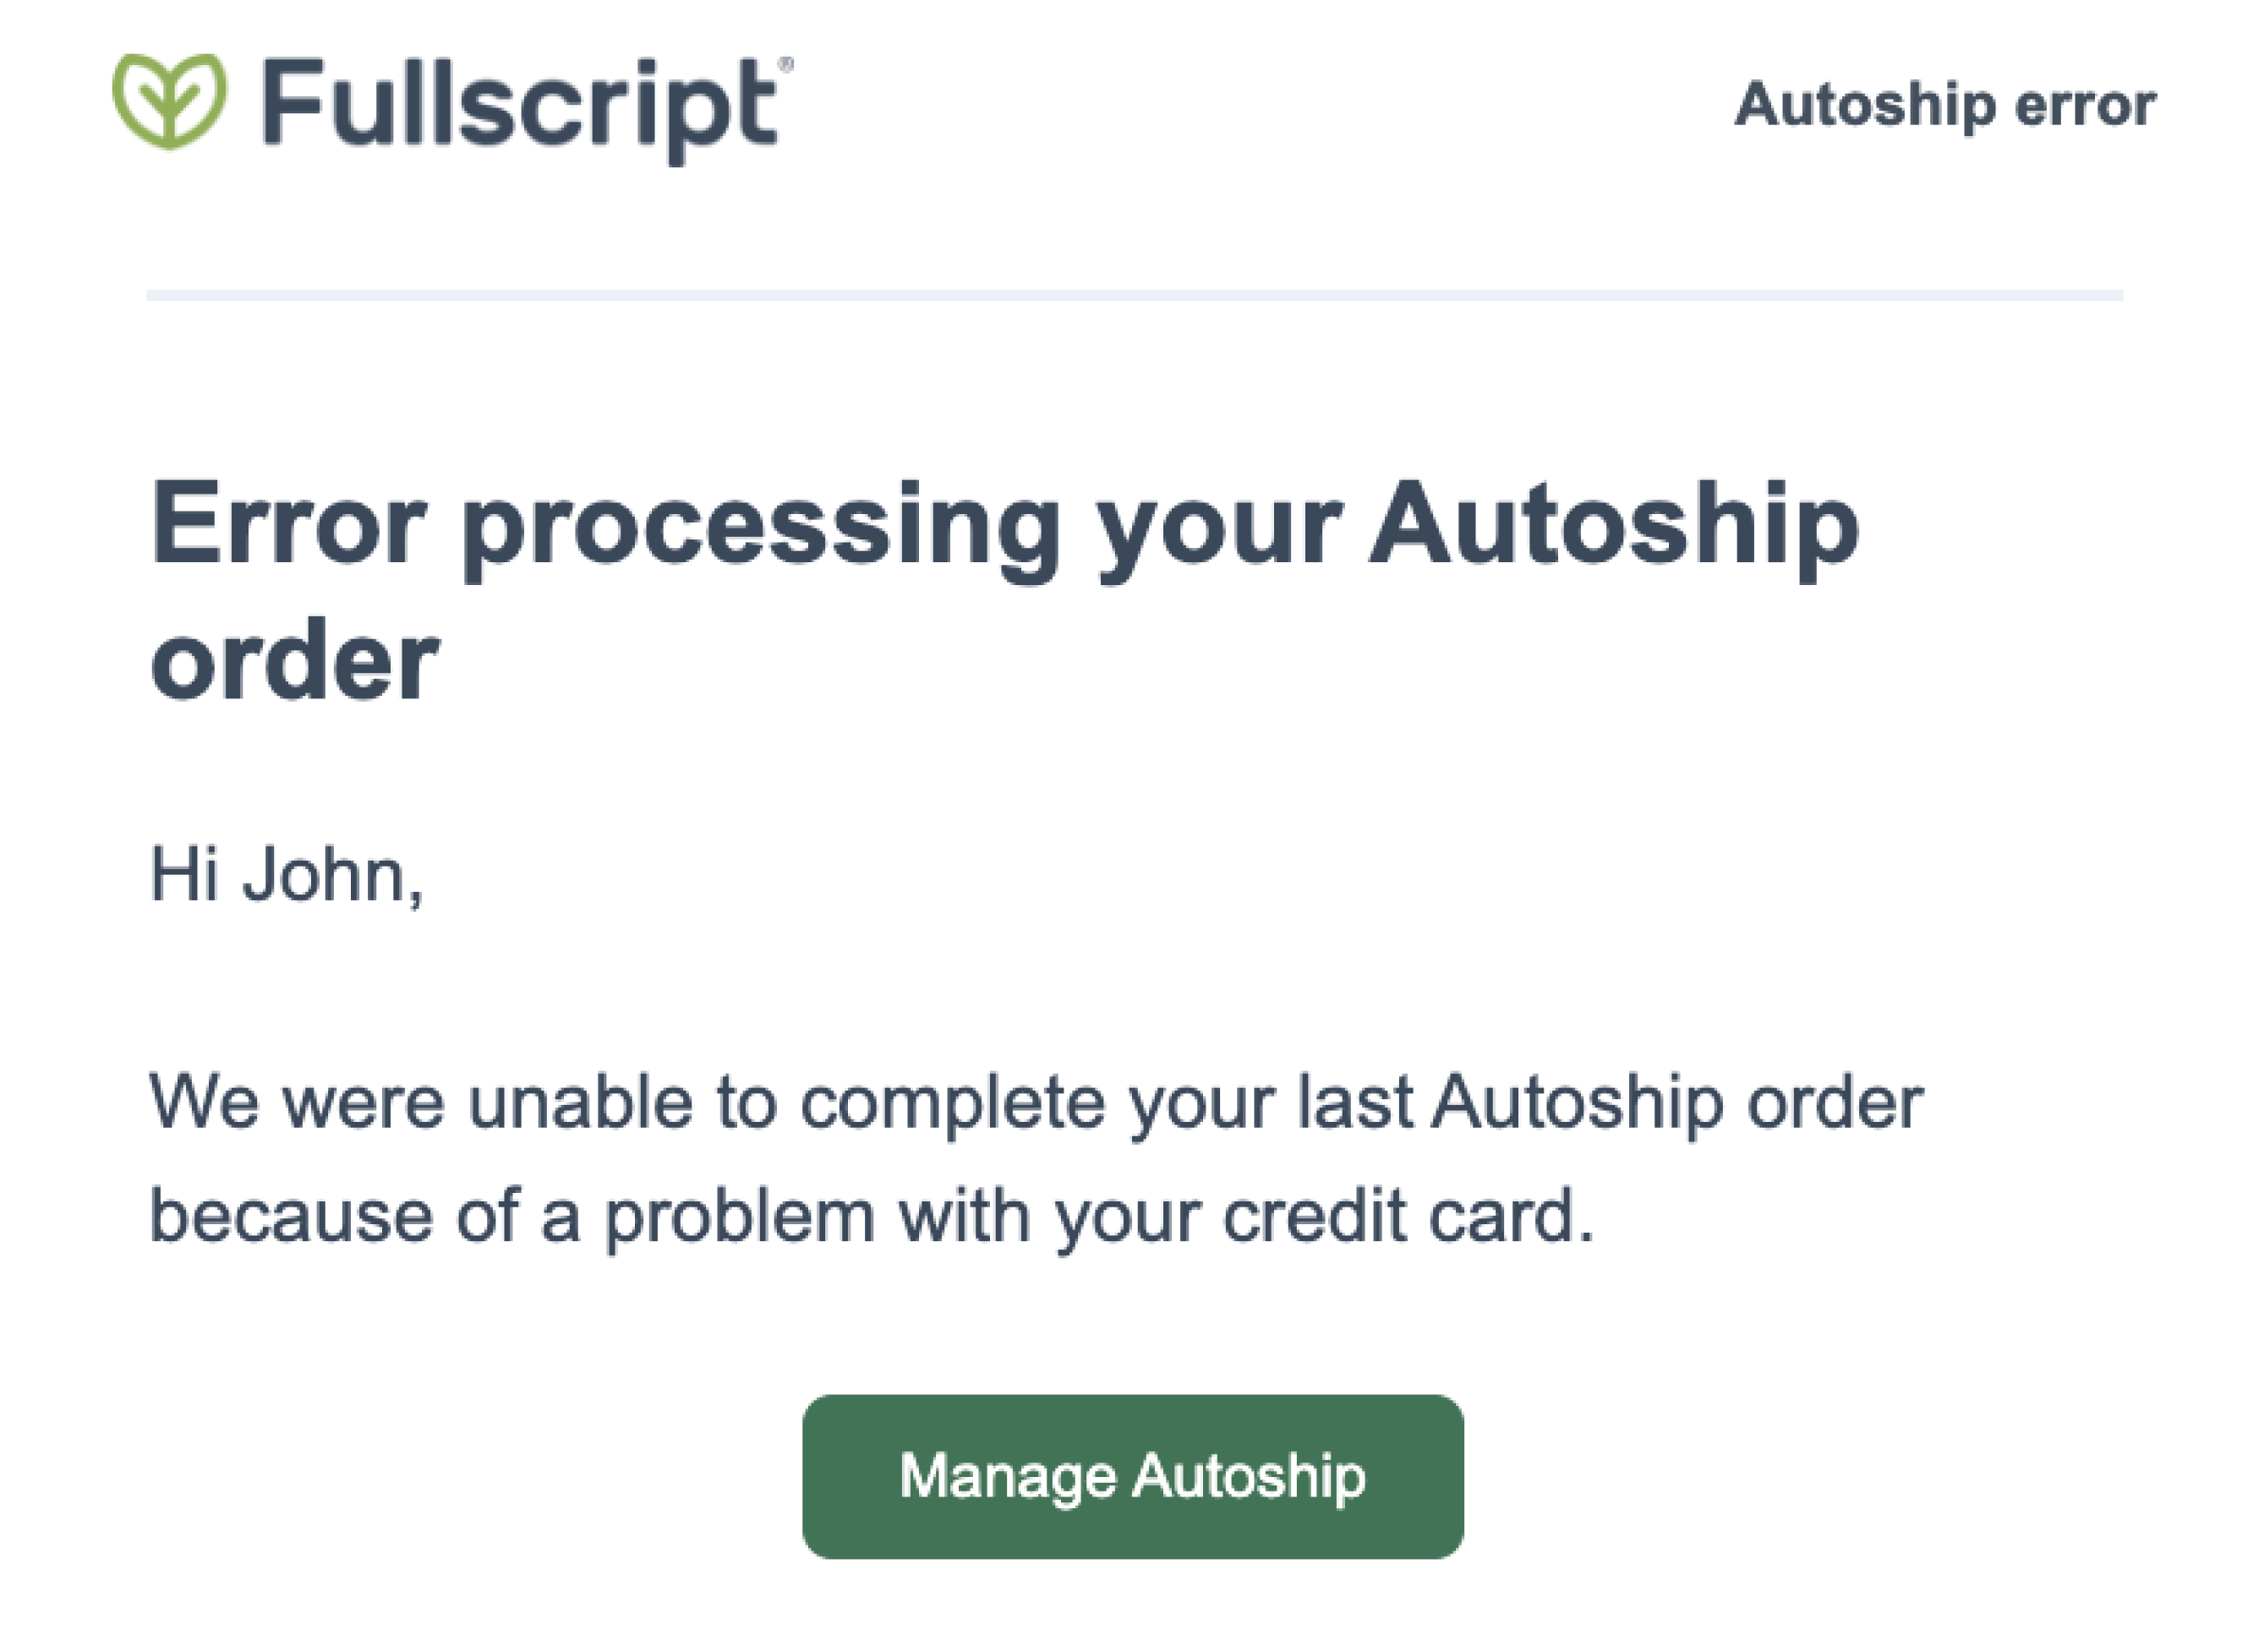 An autoship failure email